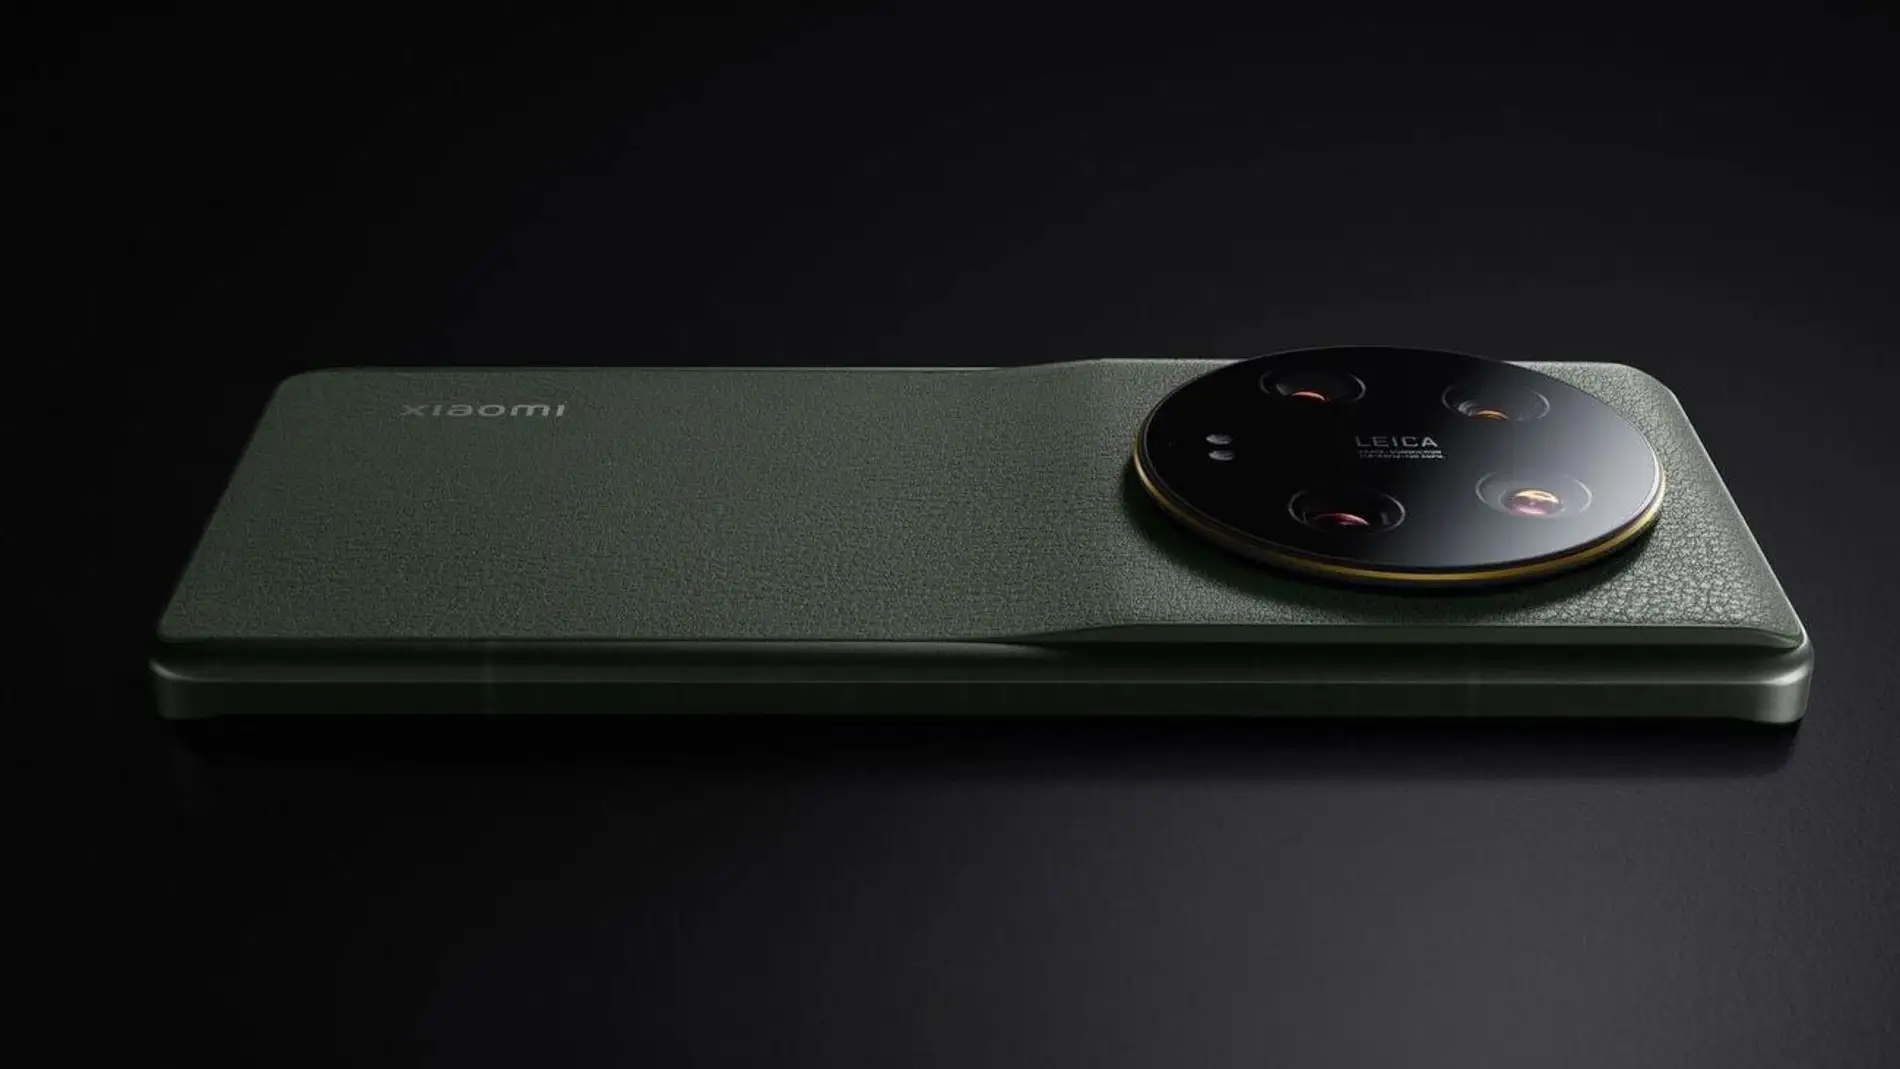 Nuevo Xiaomi 13 Pro: máxima potencia y una espectacular cámara Leica